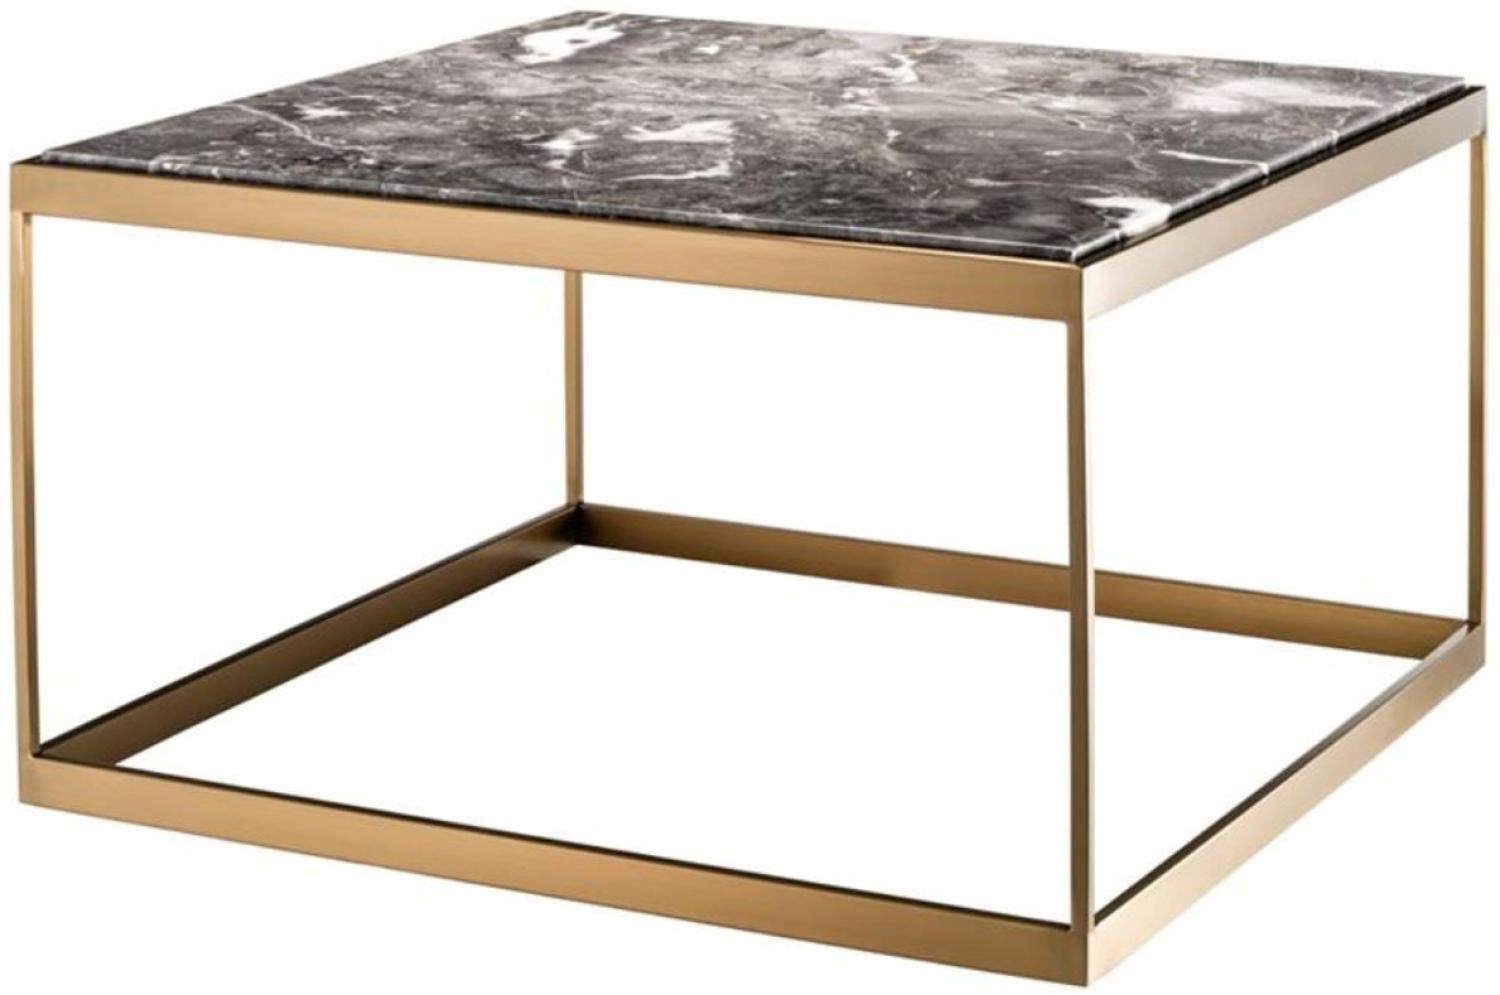 Casa Padrino Beistelltisch Grau / Messing 65 x 65 x H. 38 cm - Luxus Edelstahl Tisch mit Marmorplatte Bild 1